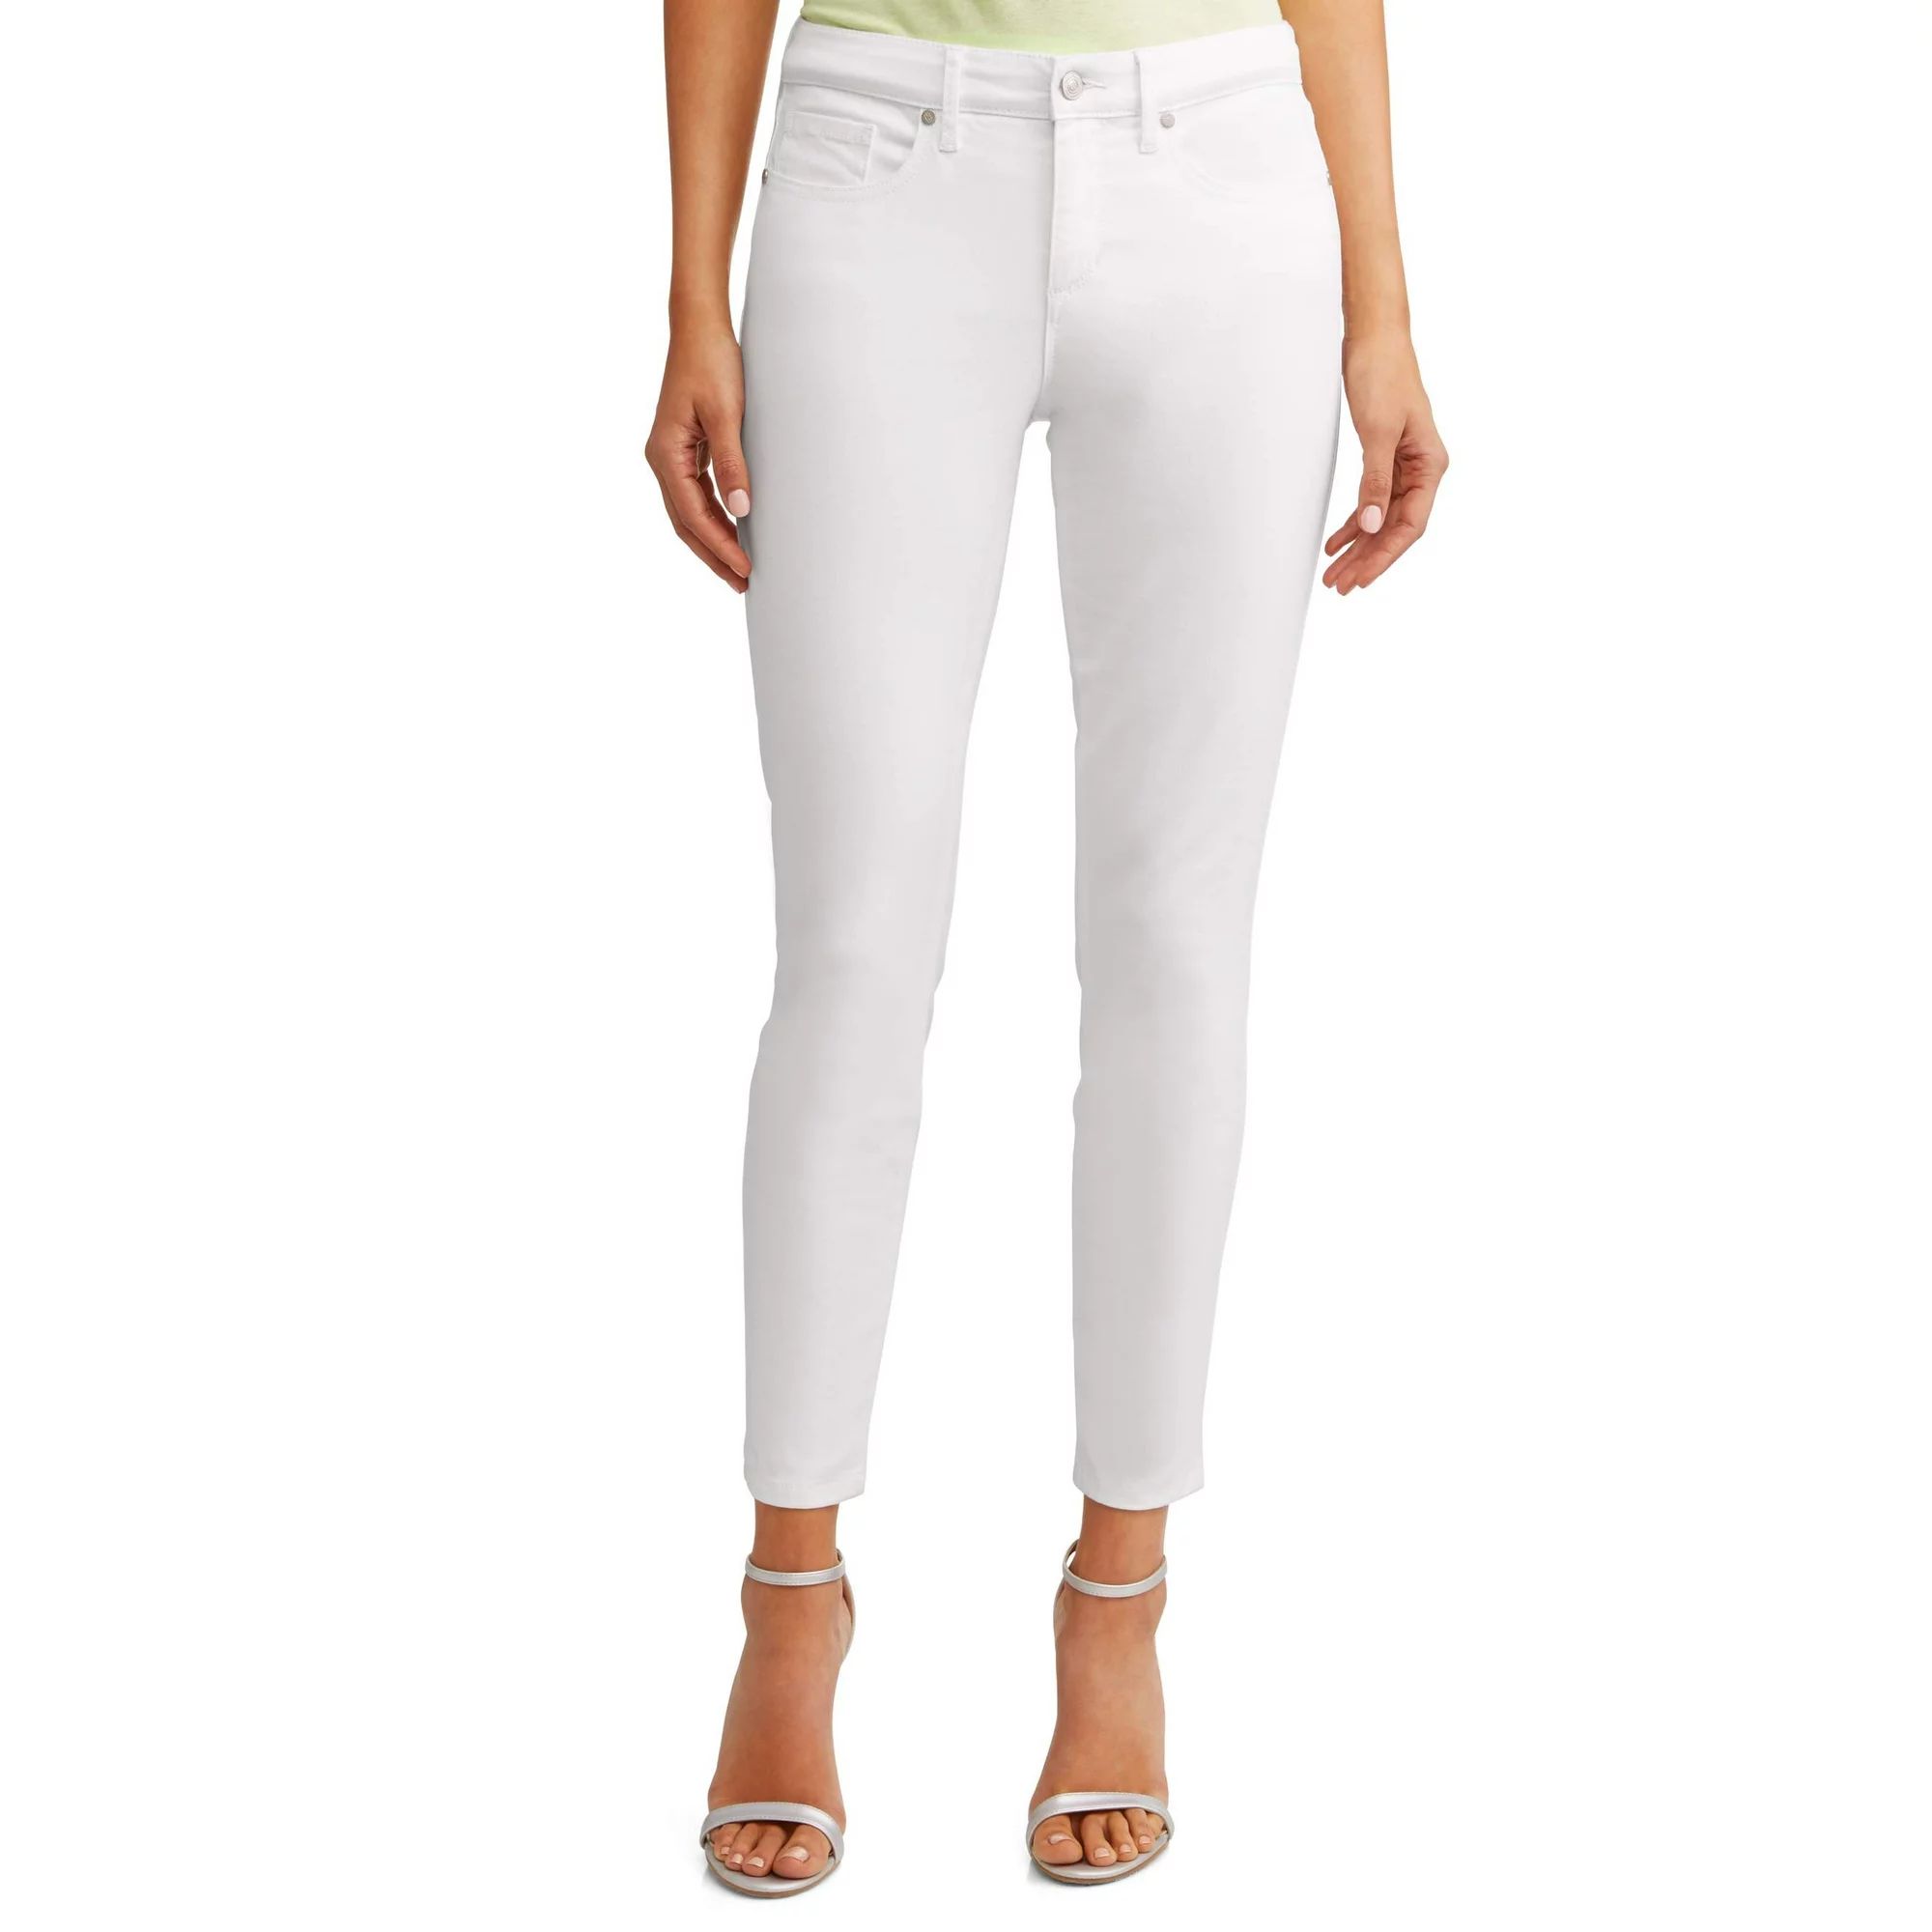 Sofia Jeans by Sofia Vergara Skinny Raw Hem Ankle Jeans in White | Walmart (US)